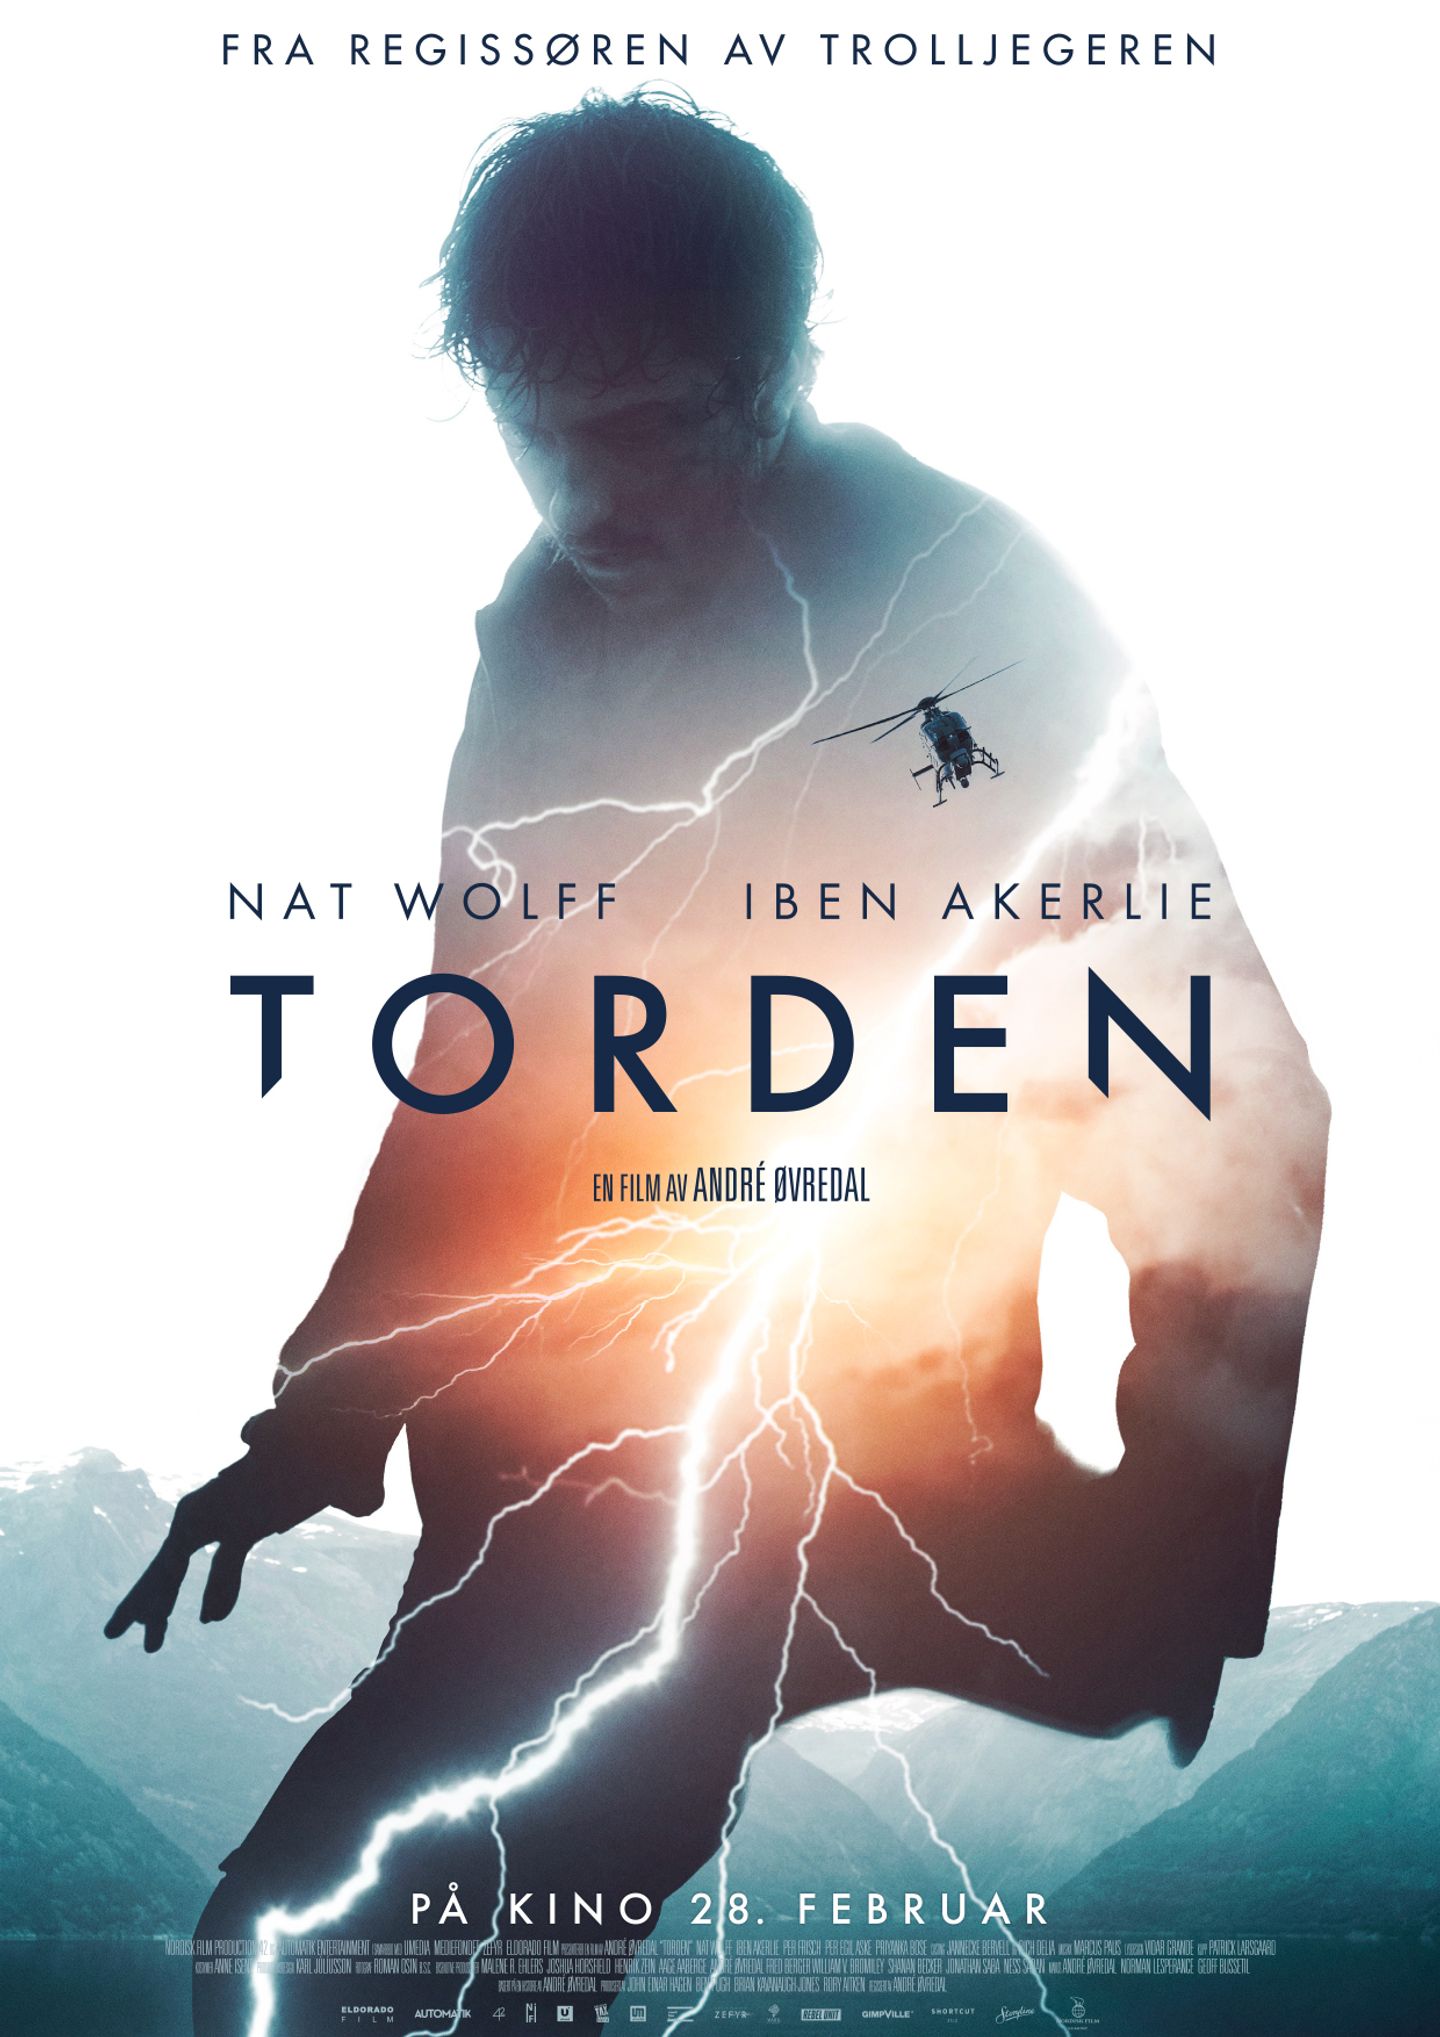 Plakat for 'Torden'